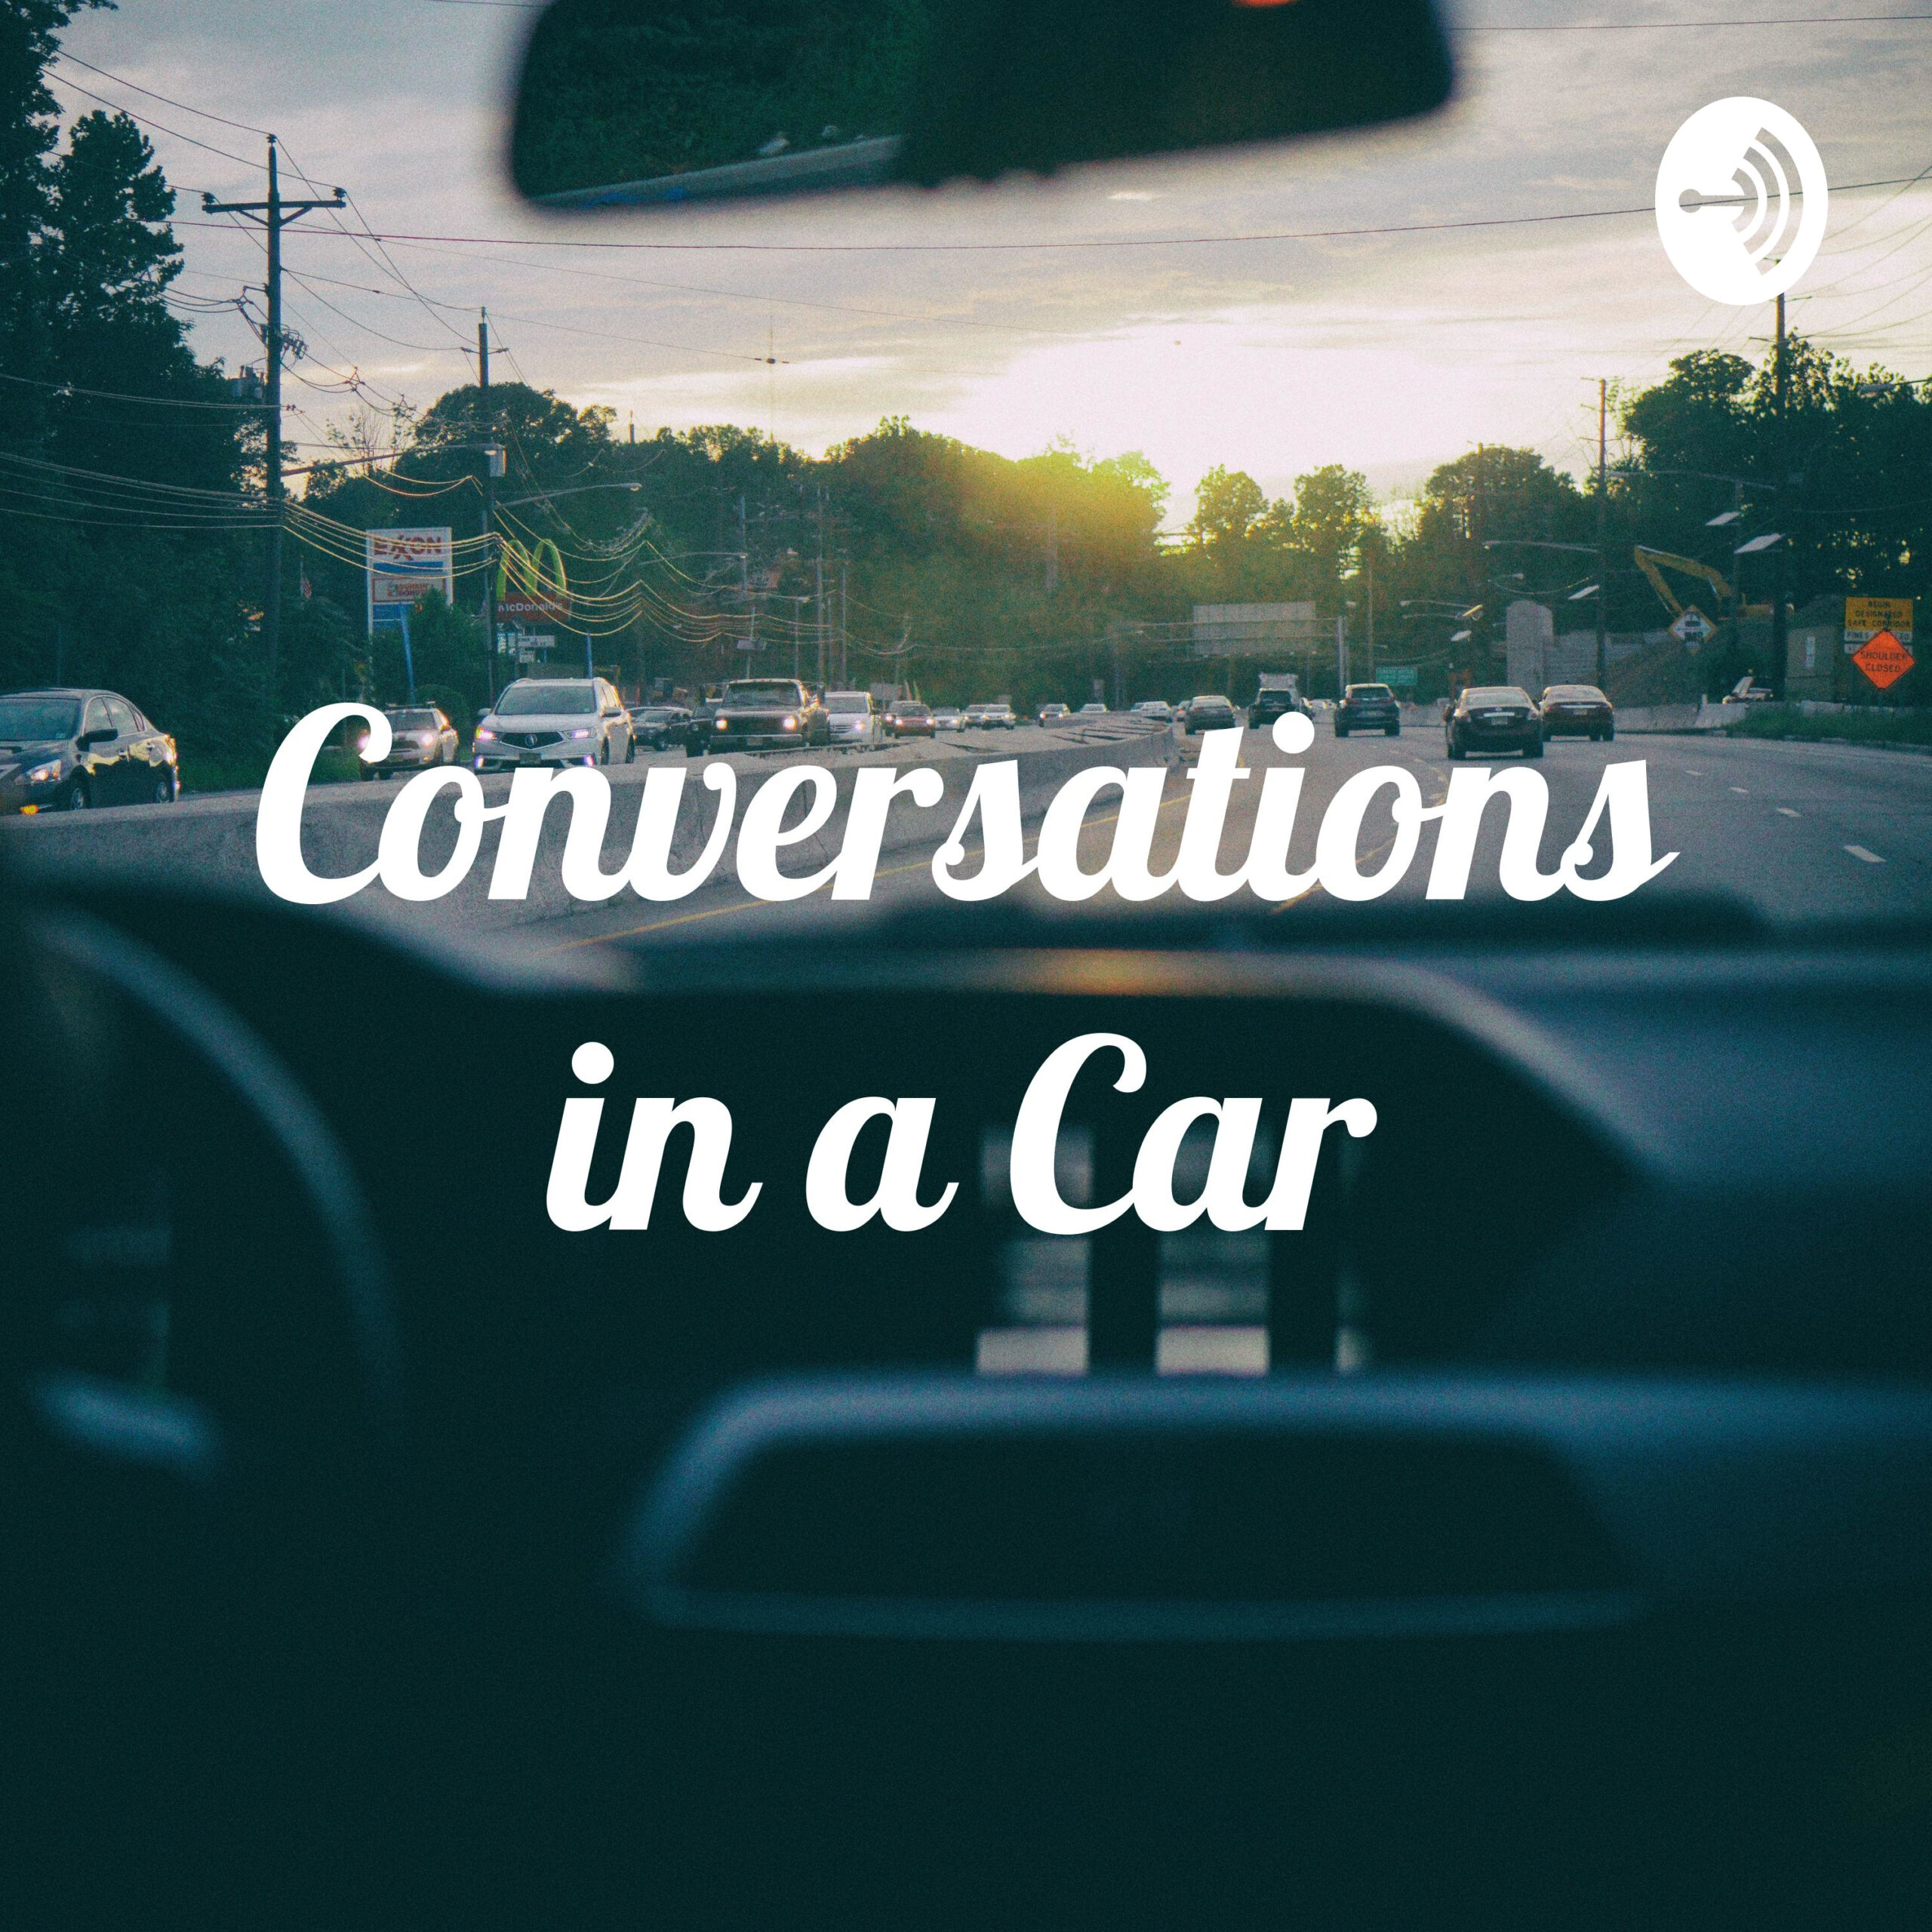 car conversations